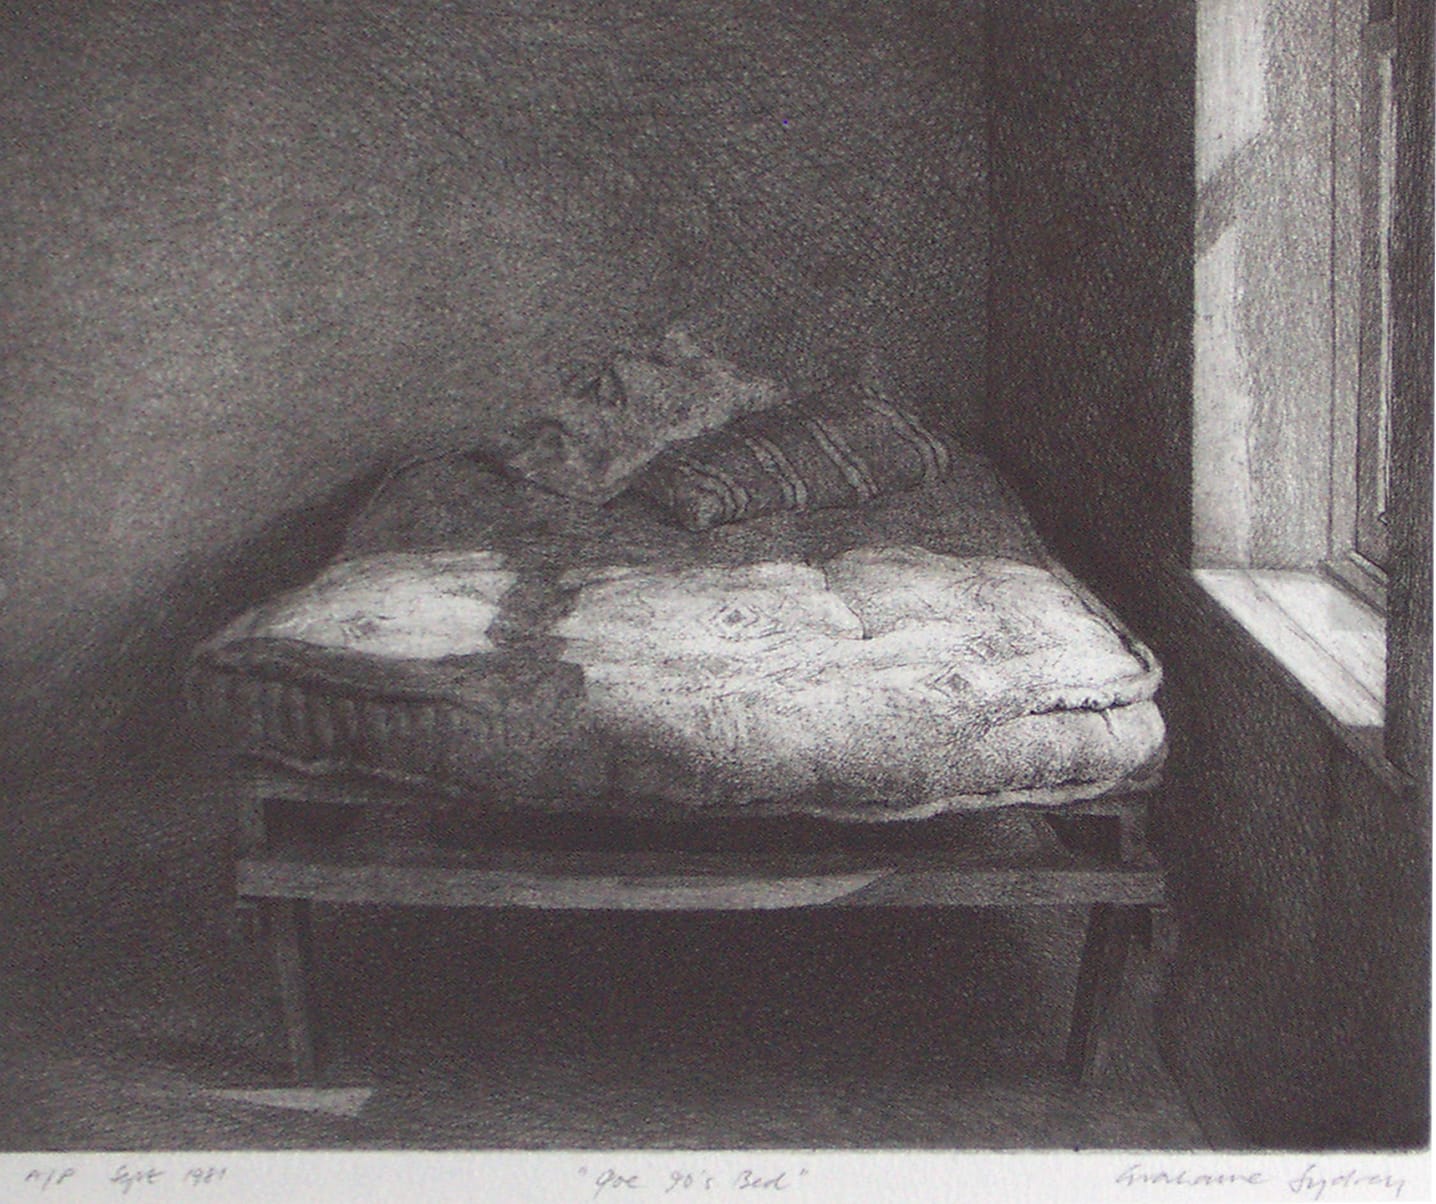 Grahame Sydney, Joe 90's Bed, A/P, 1981